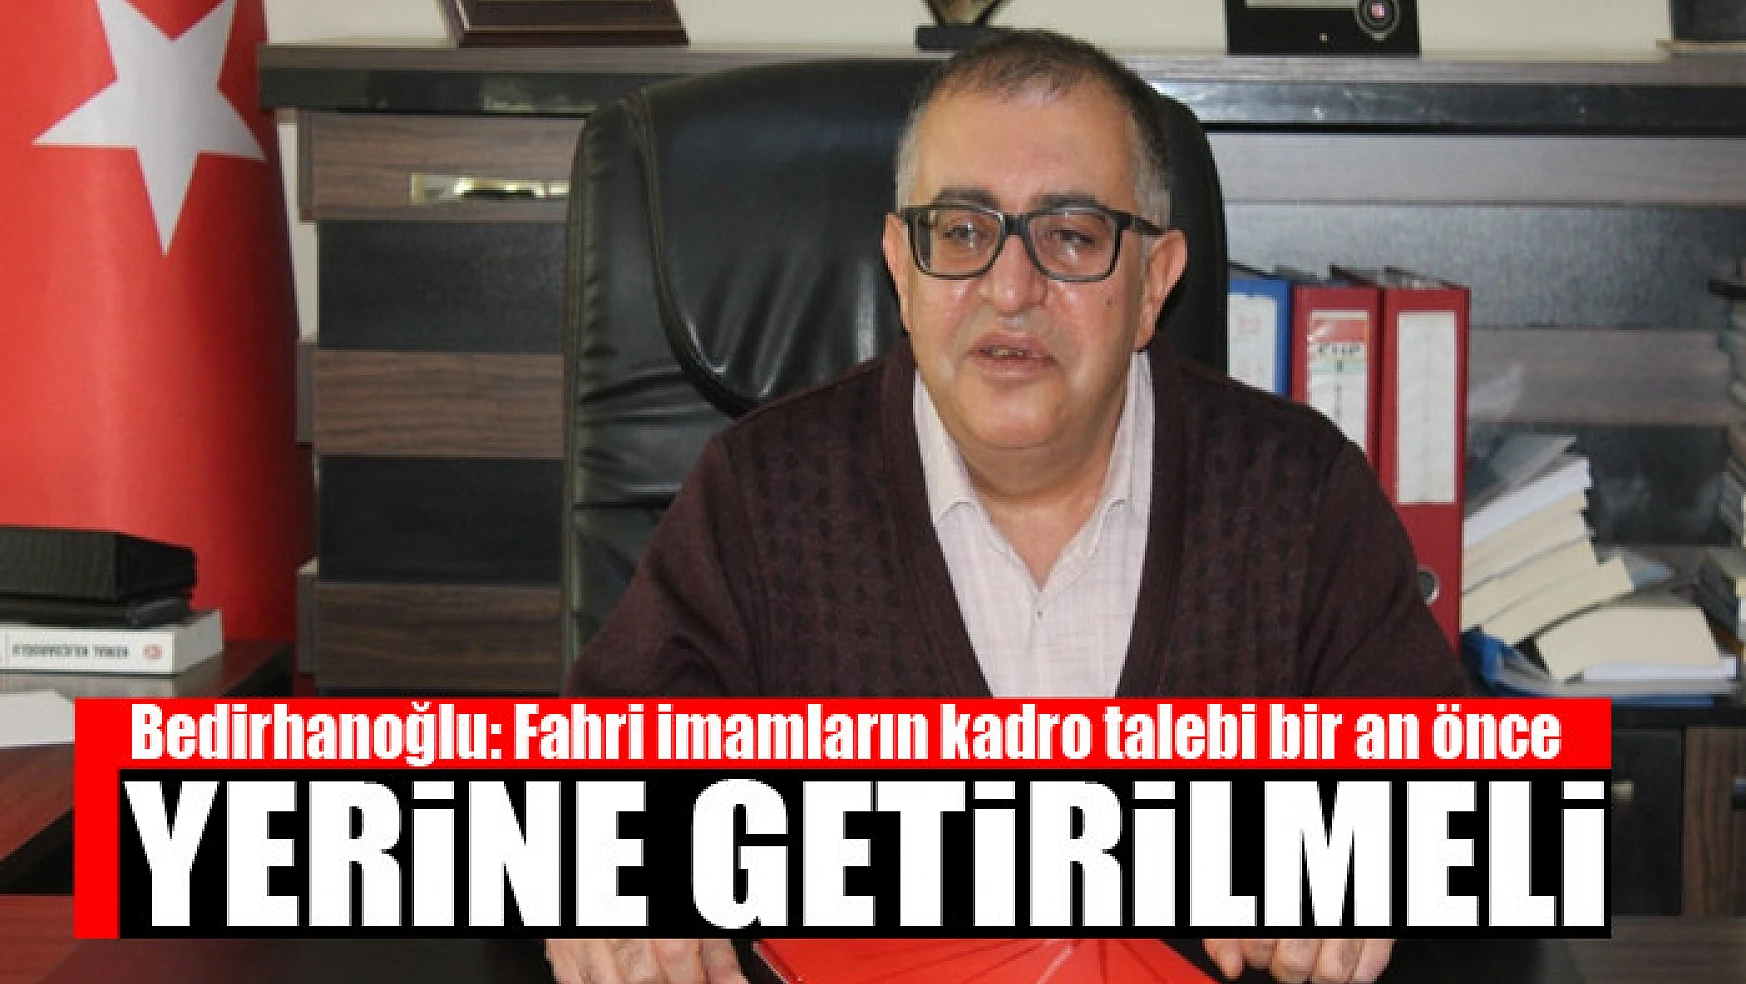 Bedirhanoğlu: Fahri imamların kadro talebi bir an önce yerine getirilmeli